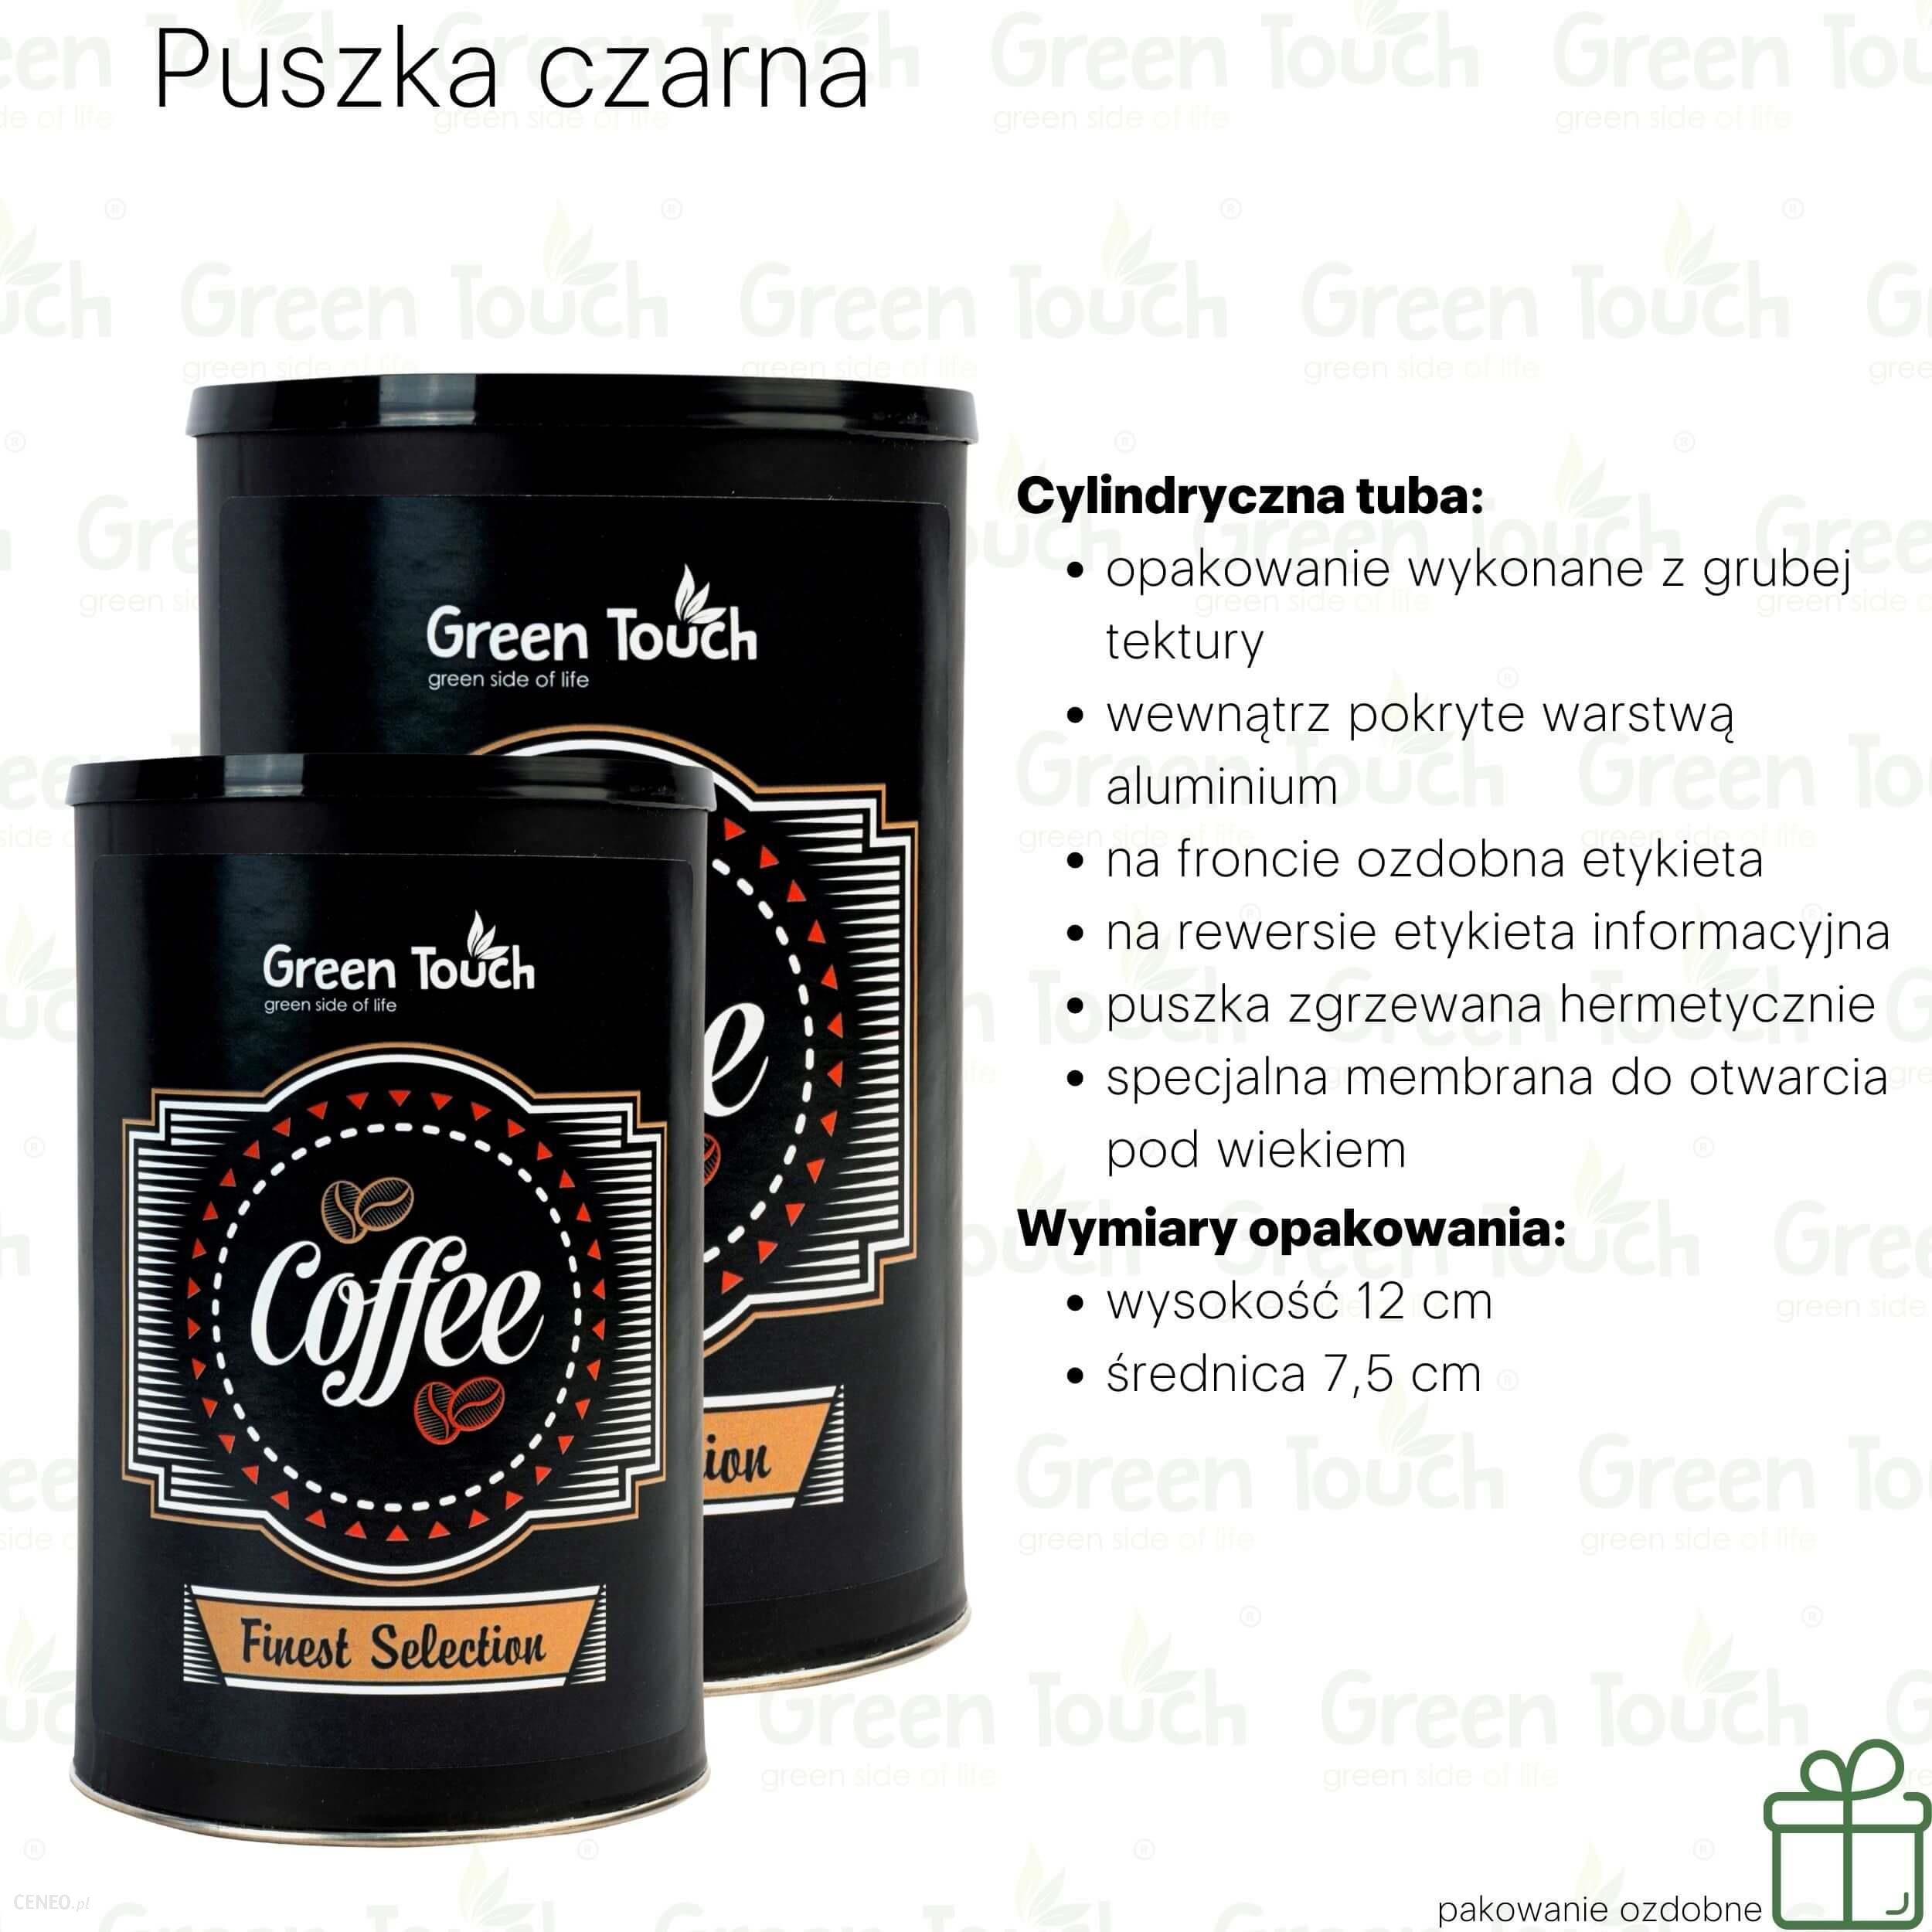 Progressive Kawa ziarnista Karmelowa (Pakowanie ozdobne, Puszka czarna 140g)